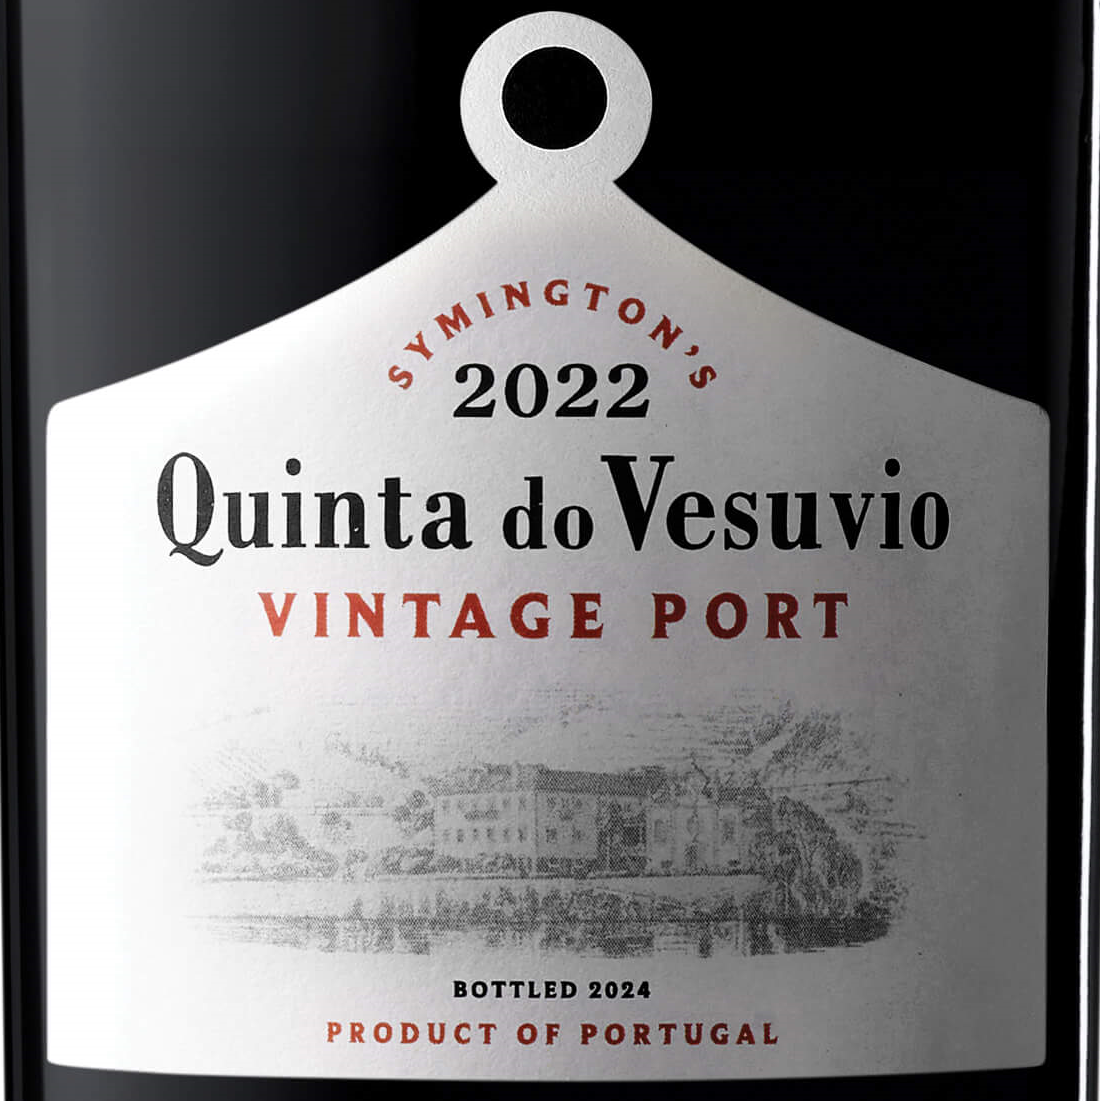 Quinta_Vesuvio_Vintage_2022_label